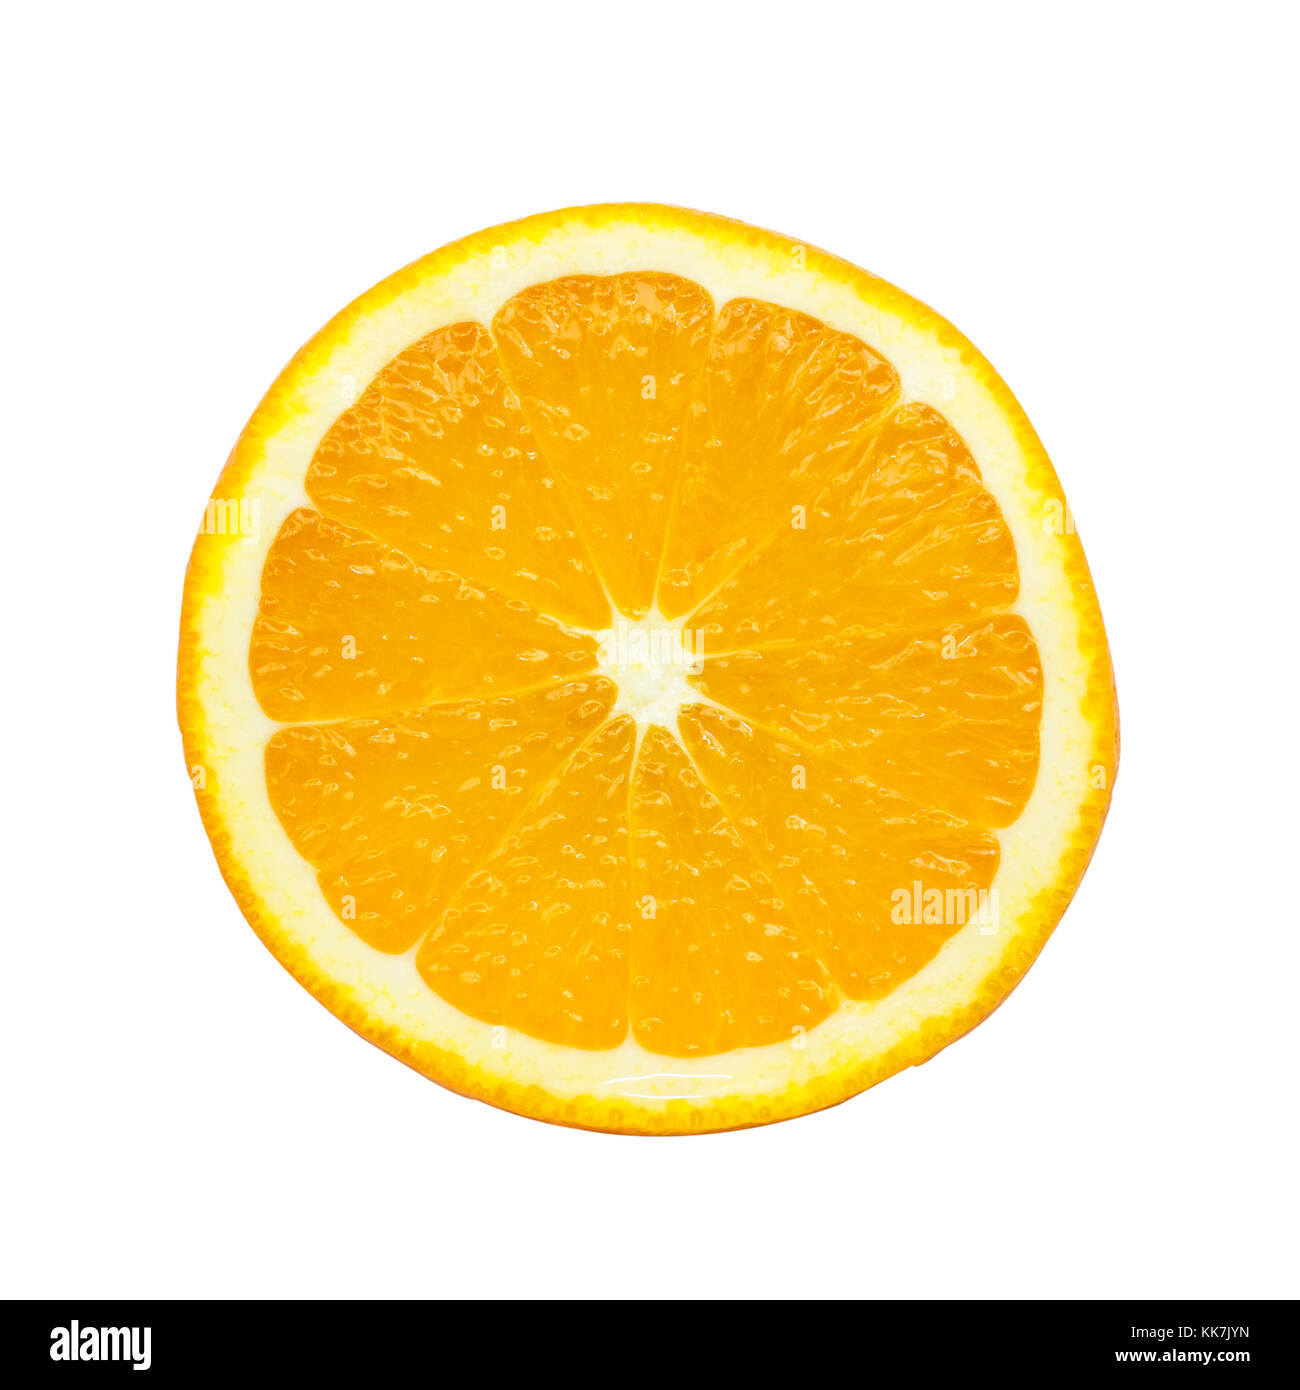 Slice of orange isolated on white background. Stock Photo